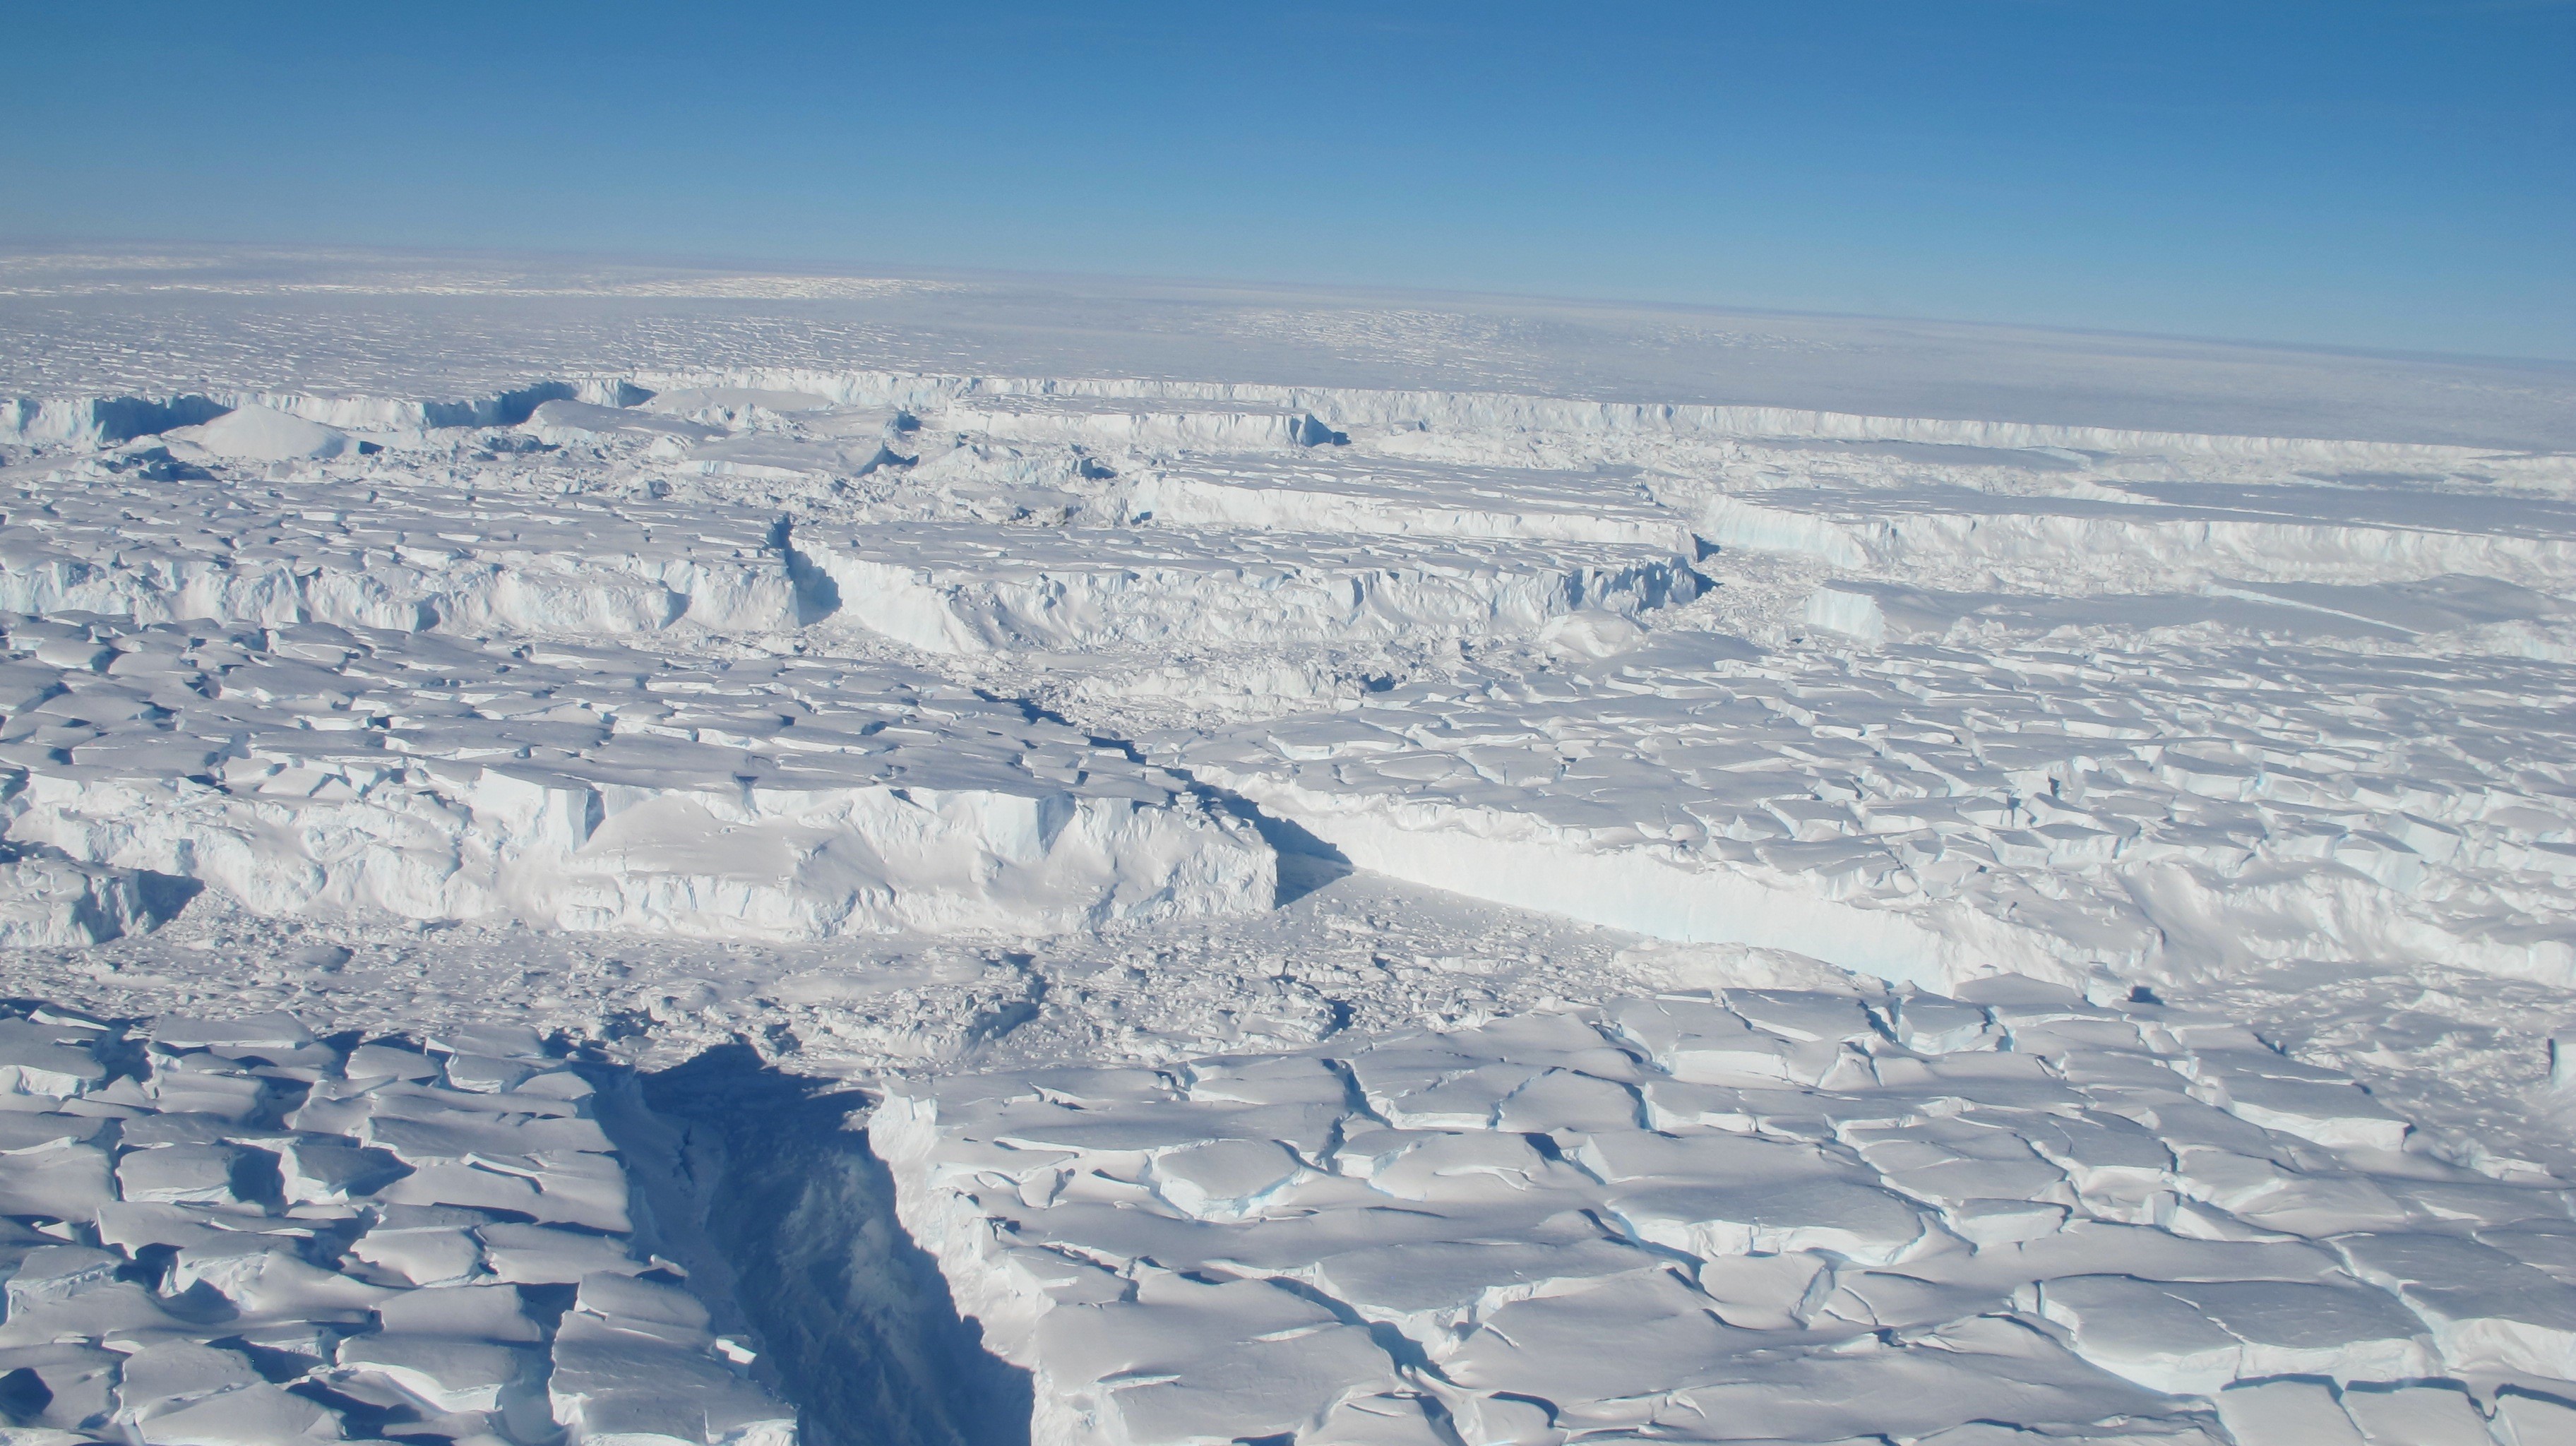 Sông băng Thwaites ở Nam Cực đang tan chảy rất nhanh